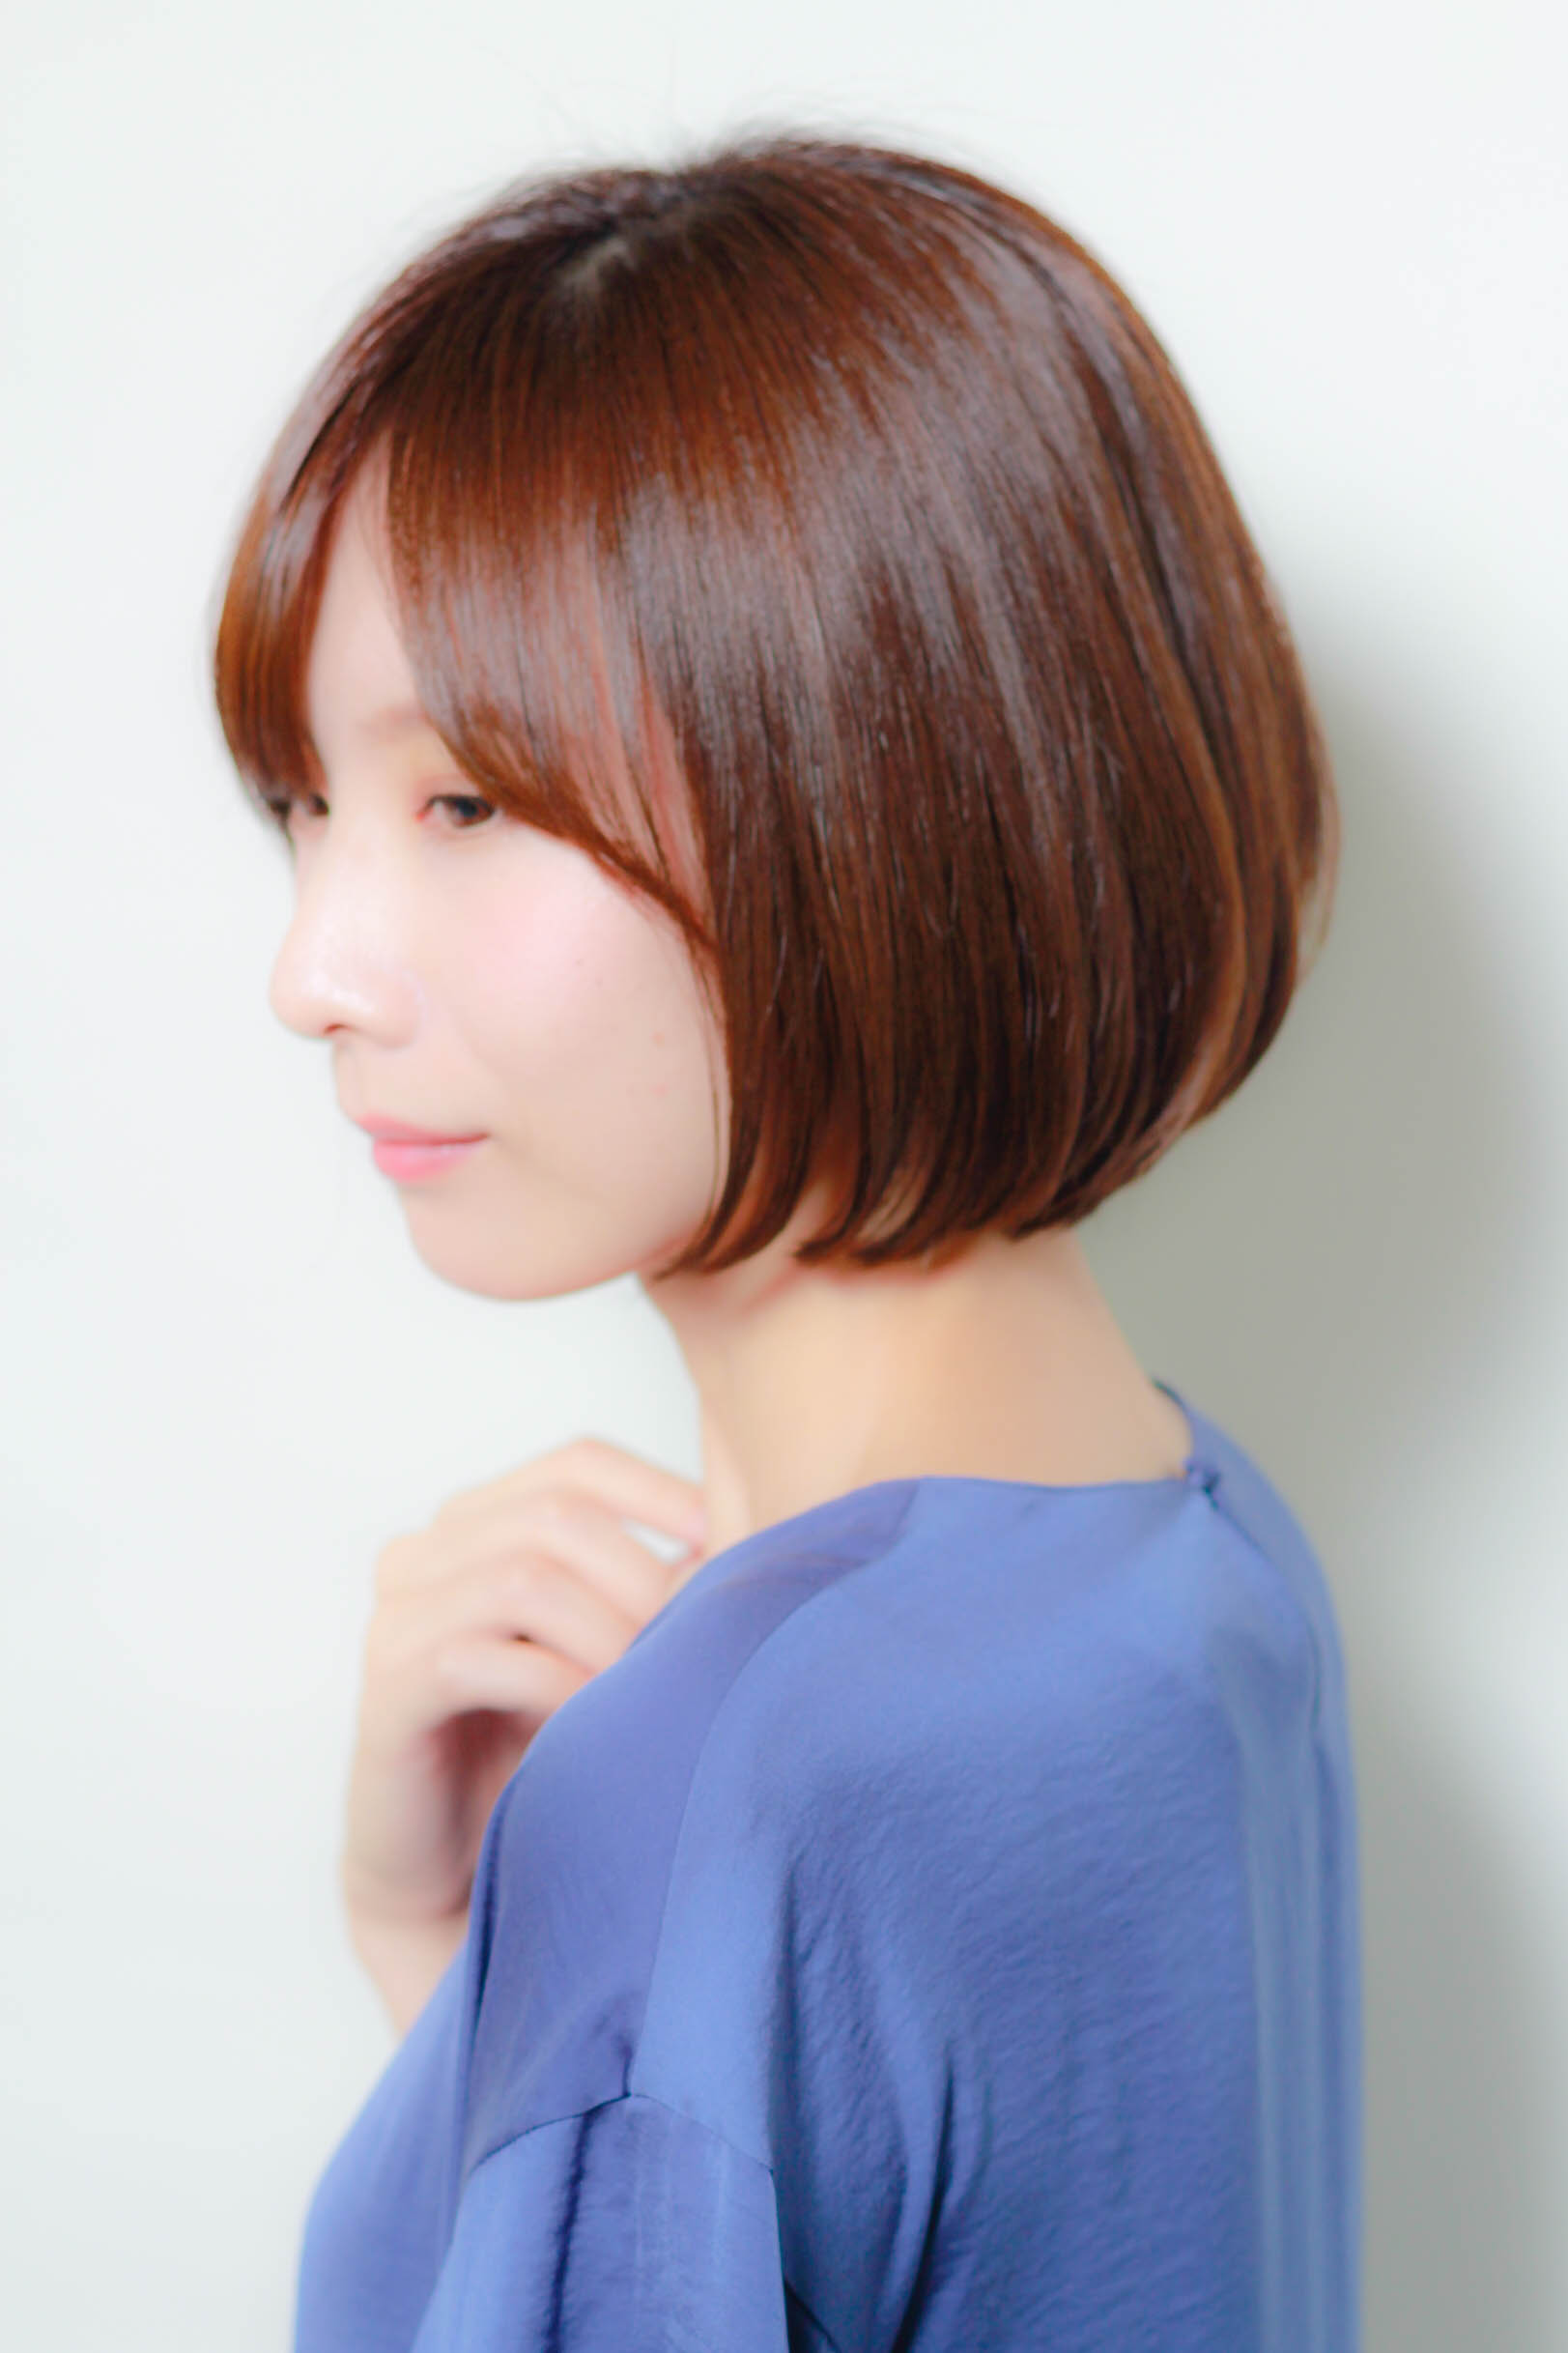 21年秋 ギリギリ結べる長さのボブで人気の髪型選 似合わせカットが上手い東京の美容師 美容室minx銀座 蛭田のブログ